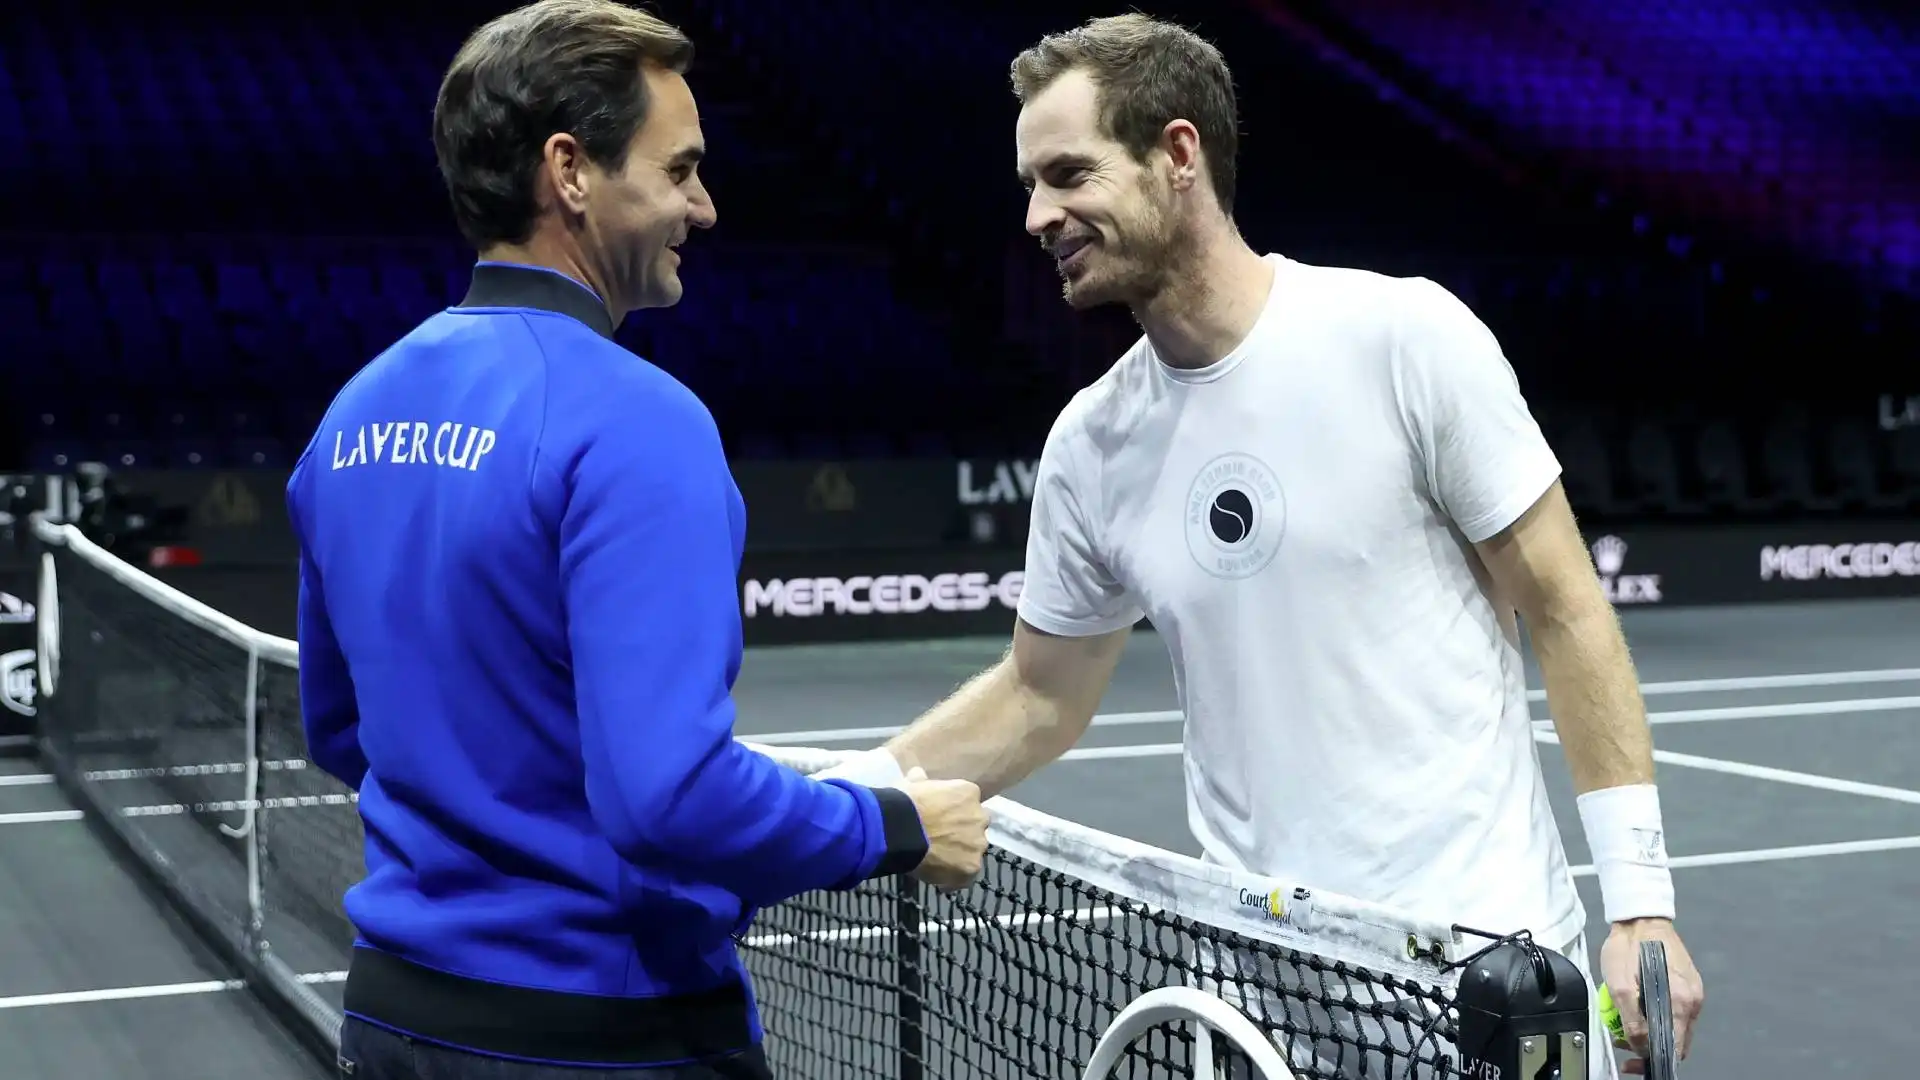 Presente anche Andy Murray, compagno di squadra di Federer nel Team Europe